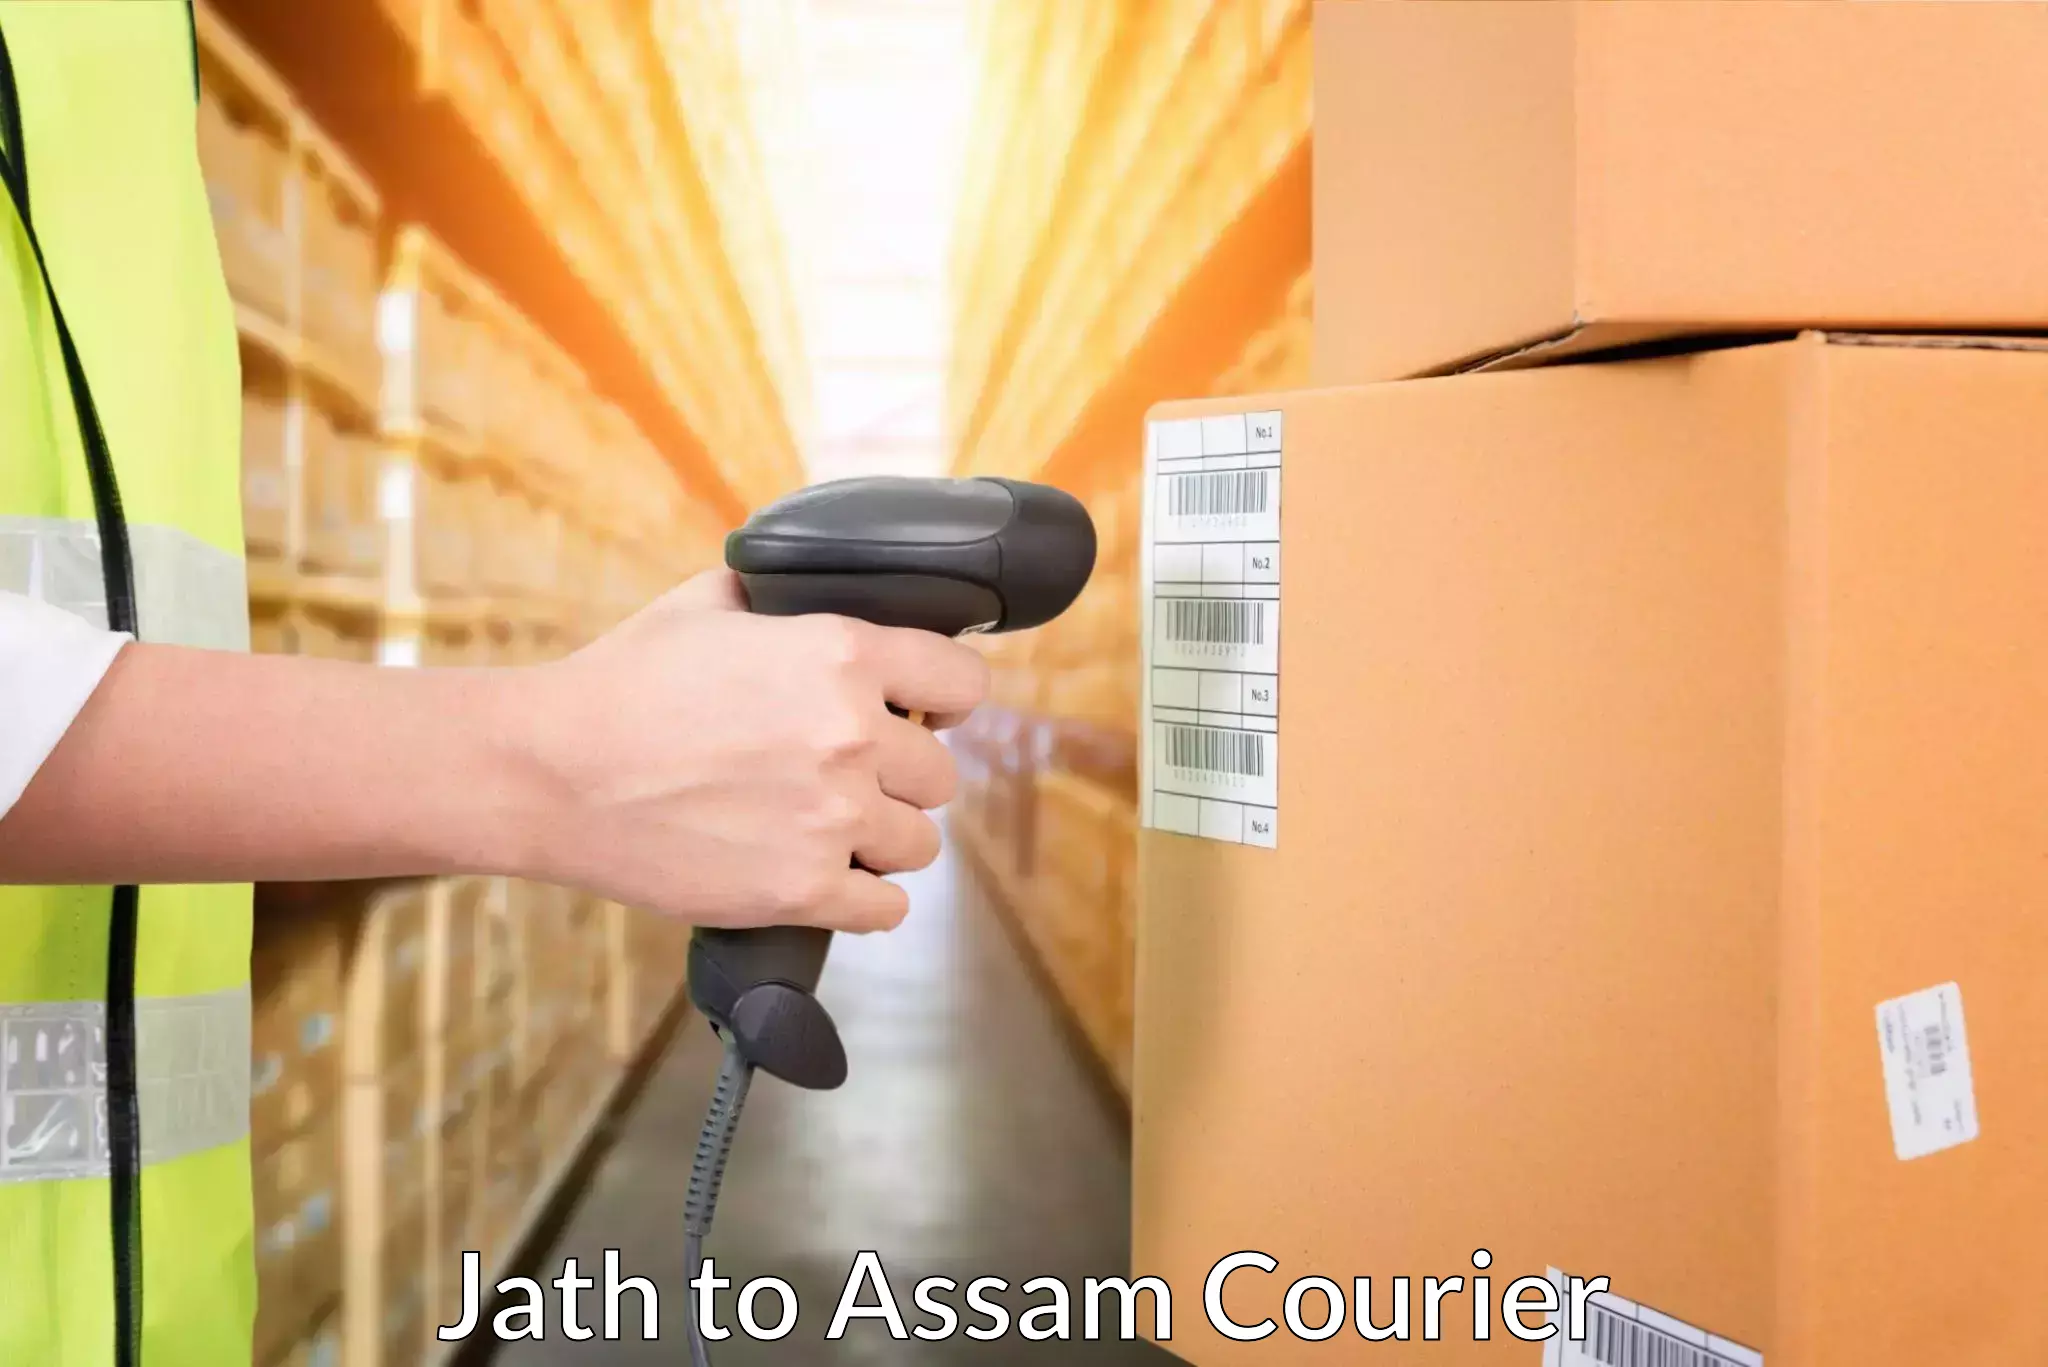 Door-to-door freight service Jath to Assam